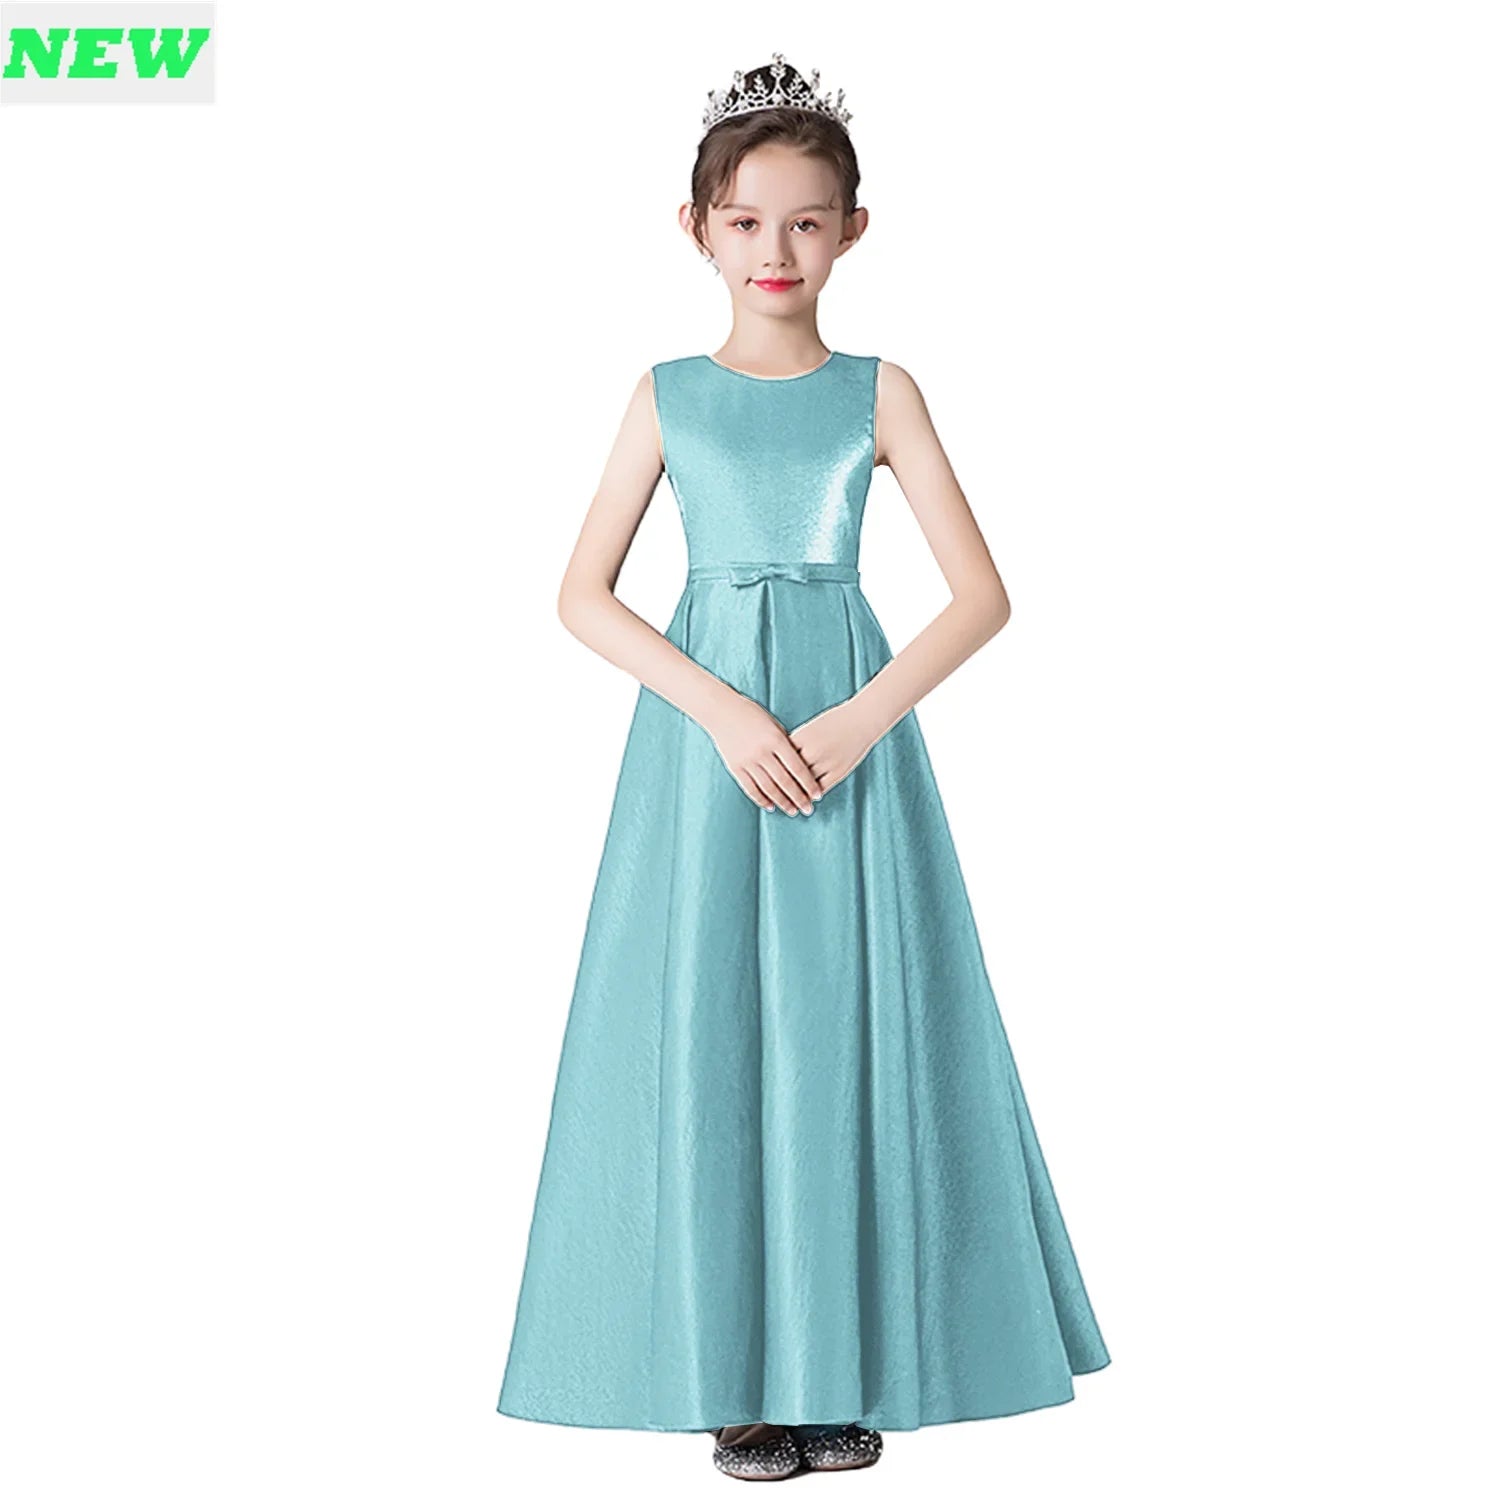 Canmol Sleeveless Flower Girl Party Dress in Satin - Elegant Junior Formal Gown